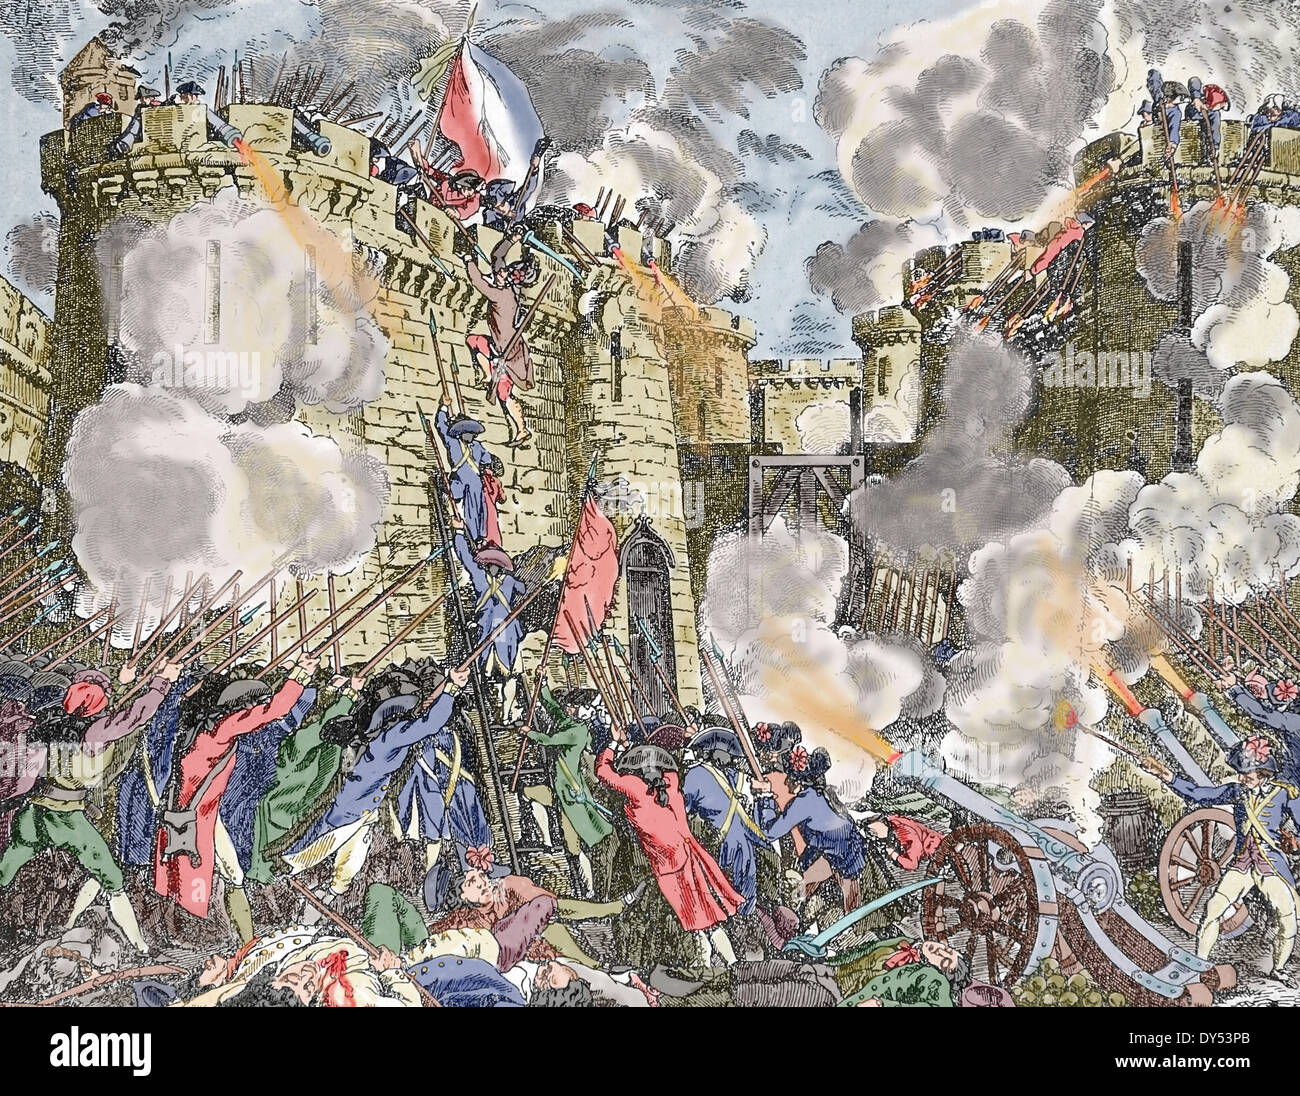 Französische Revolution. Sturm auf die Bastille. Paris. Frankreich. Am Morgen des 14. Juli 1789. Gravur. Spätere Färbung. Stockfoto